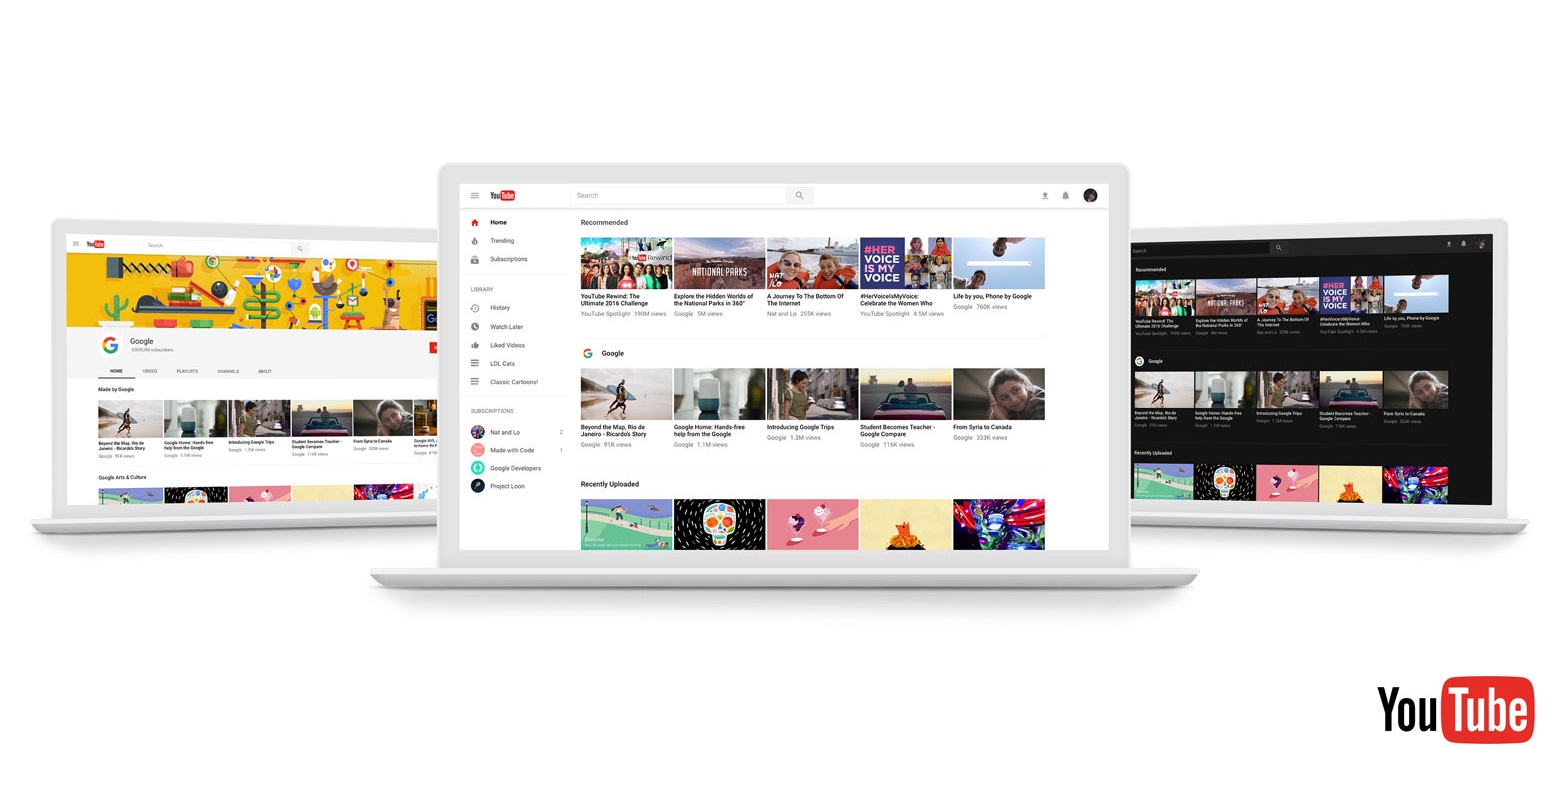 Το YouTube ανανεώνεται εμφανισιακά και δίνει ακόμα μεγαλύτερη έμφαση στο περιεχόμενο